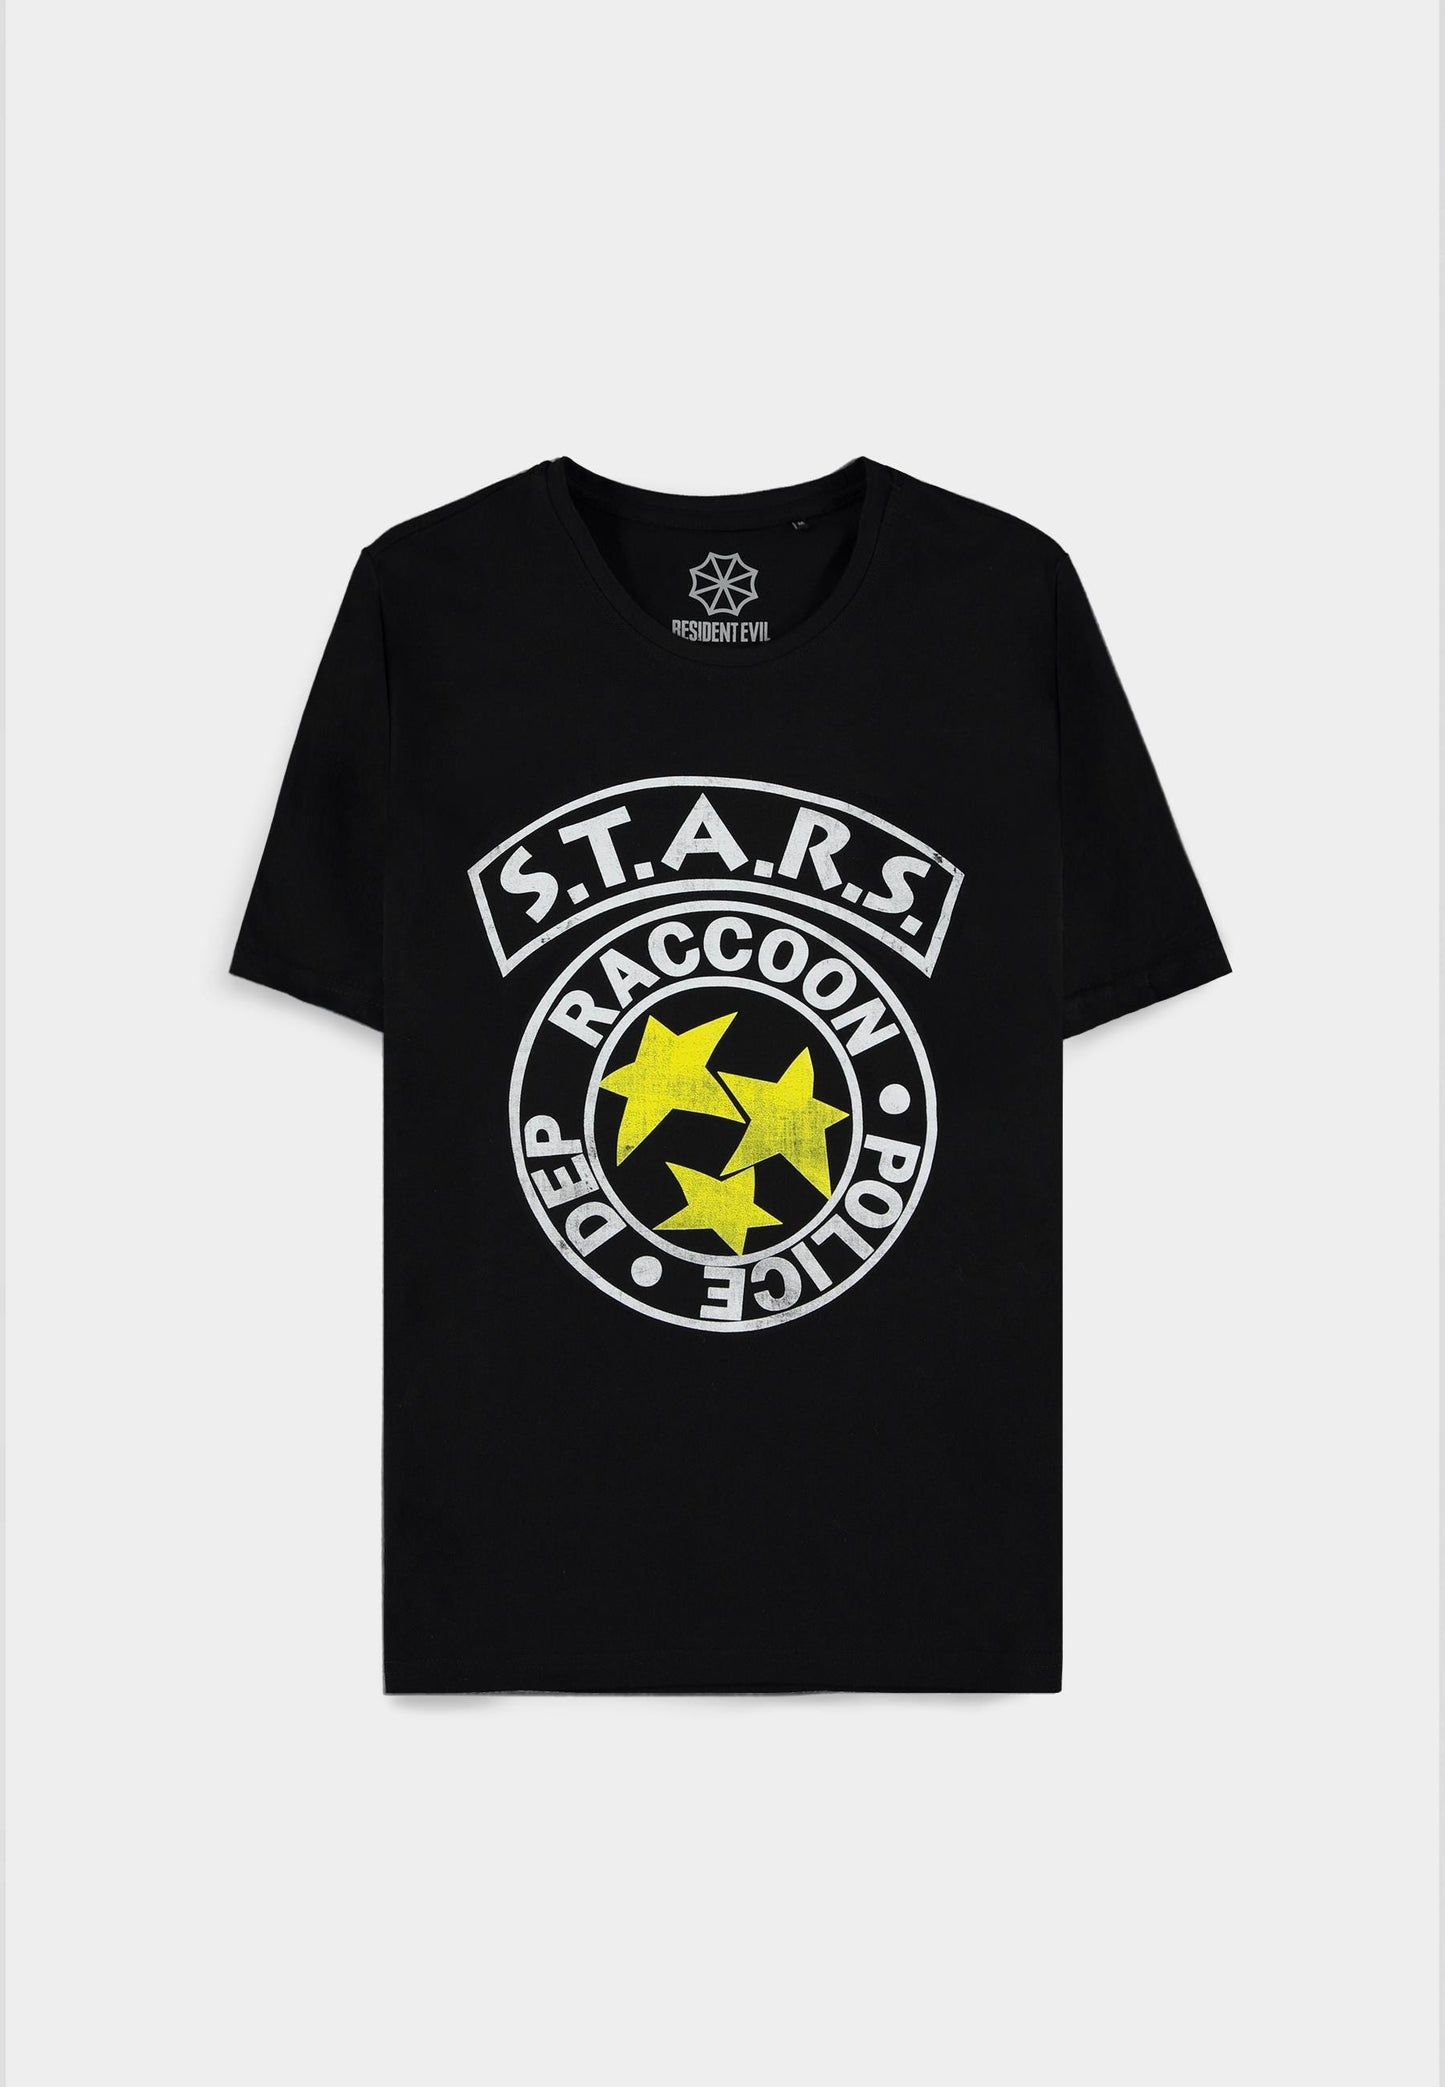 Resident Evil - S.T.A.R.S. - Men's Logo Short Sleeved T-shirt